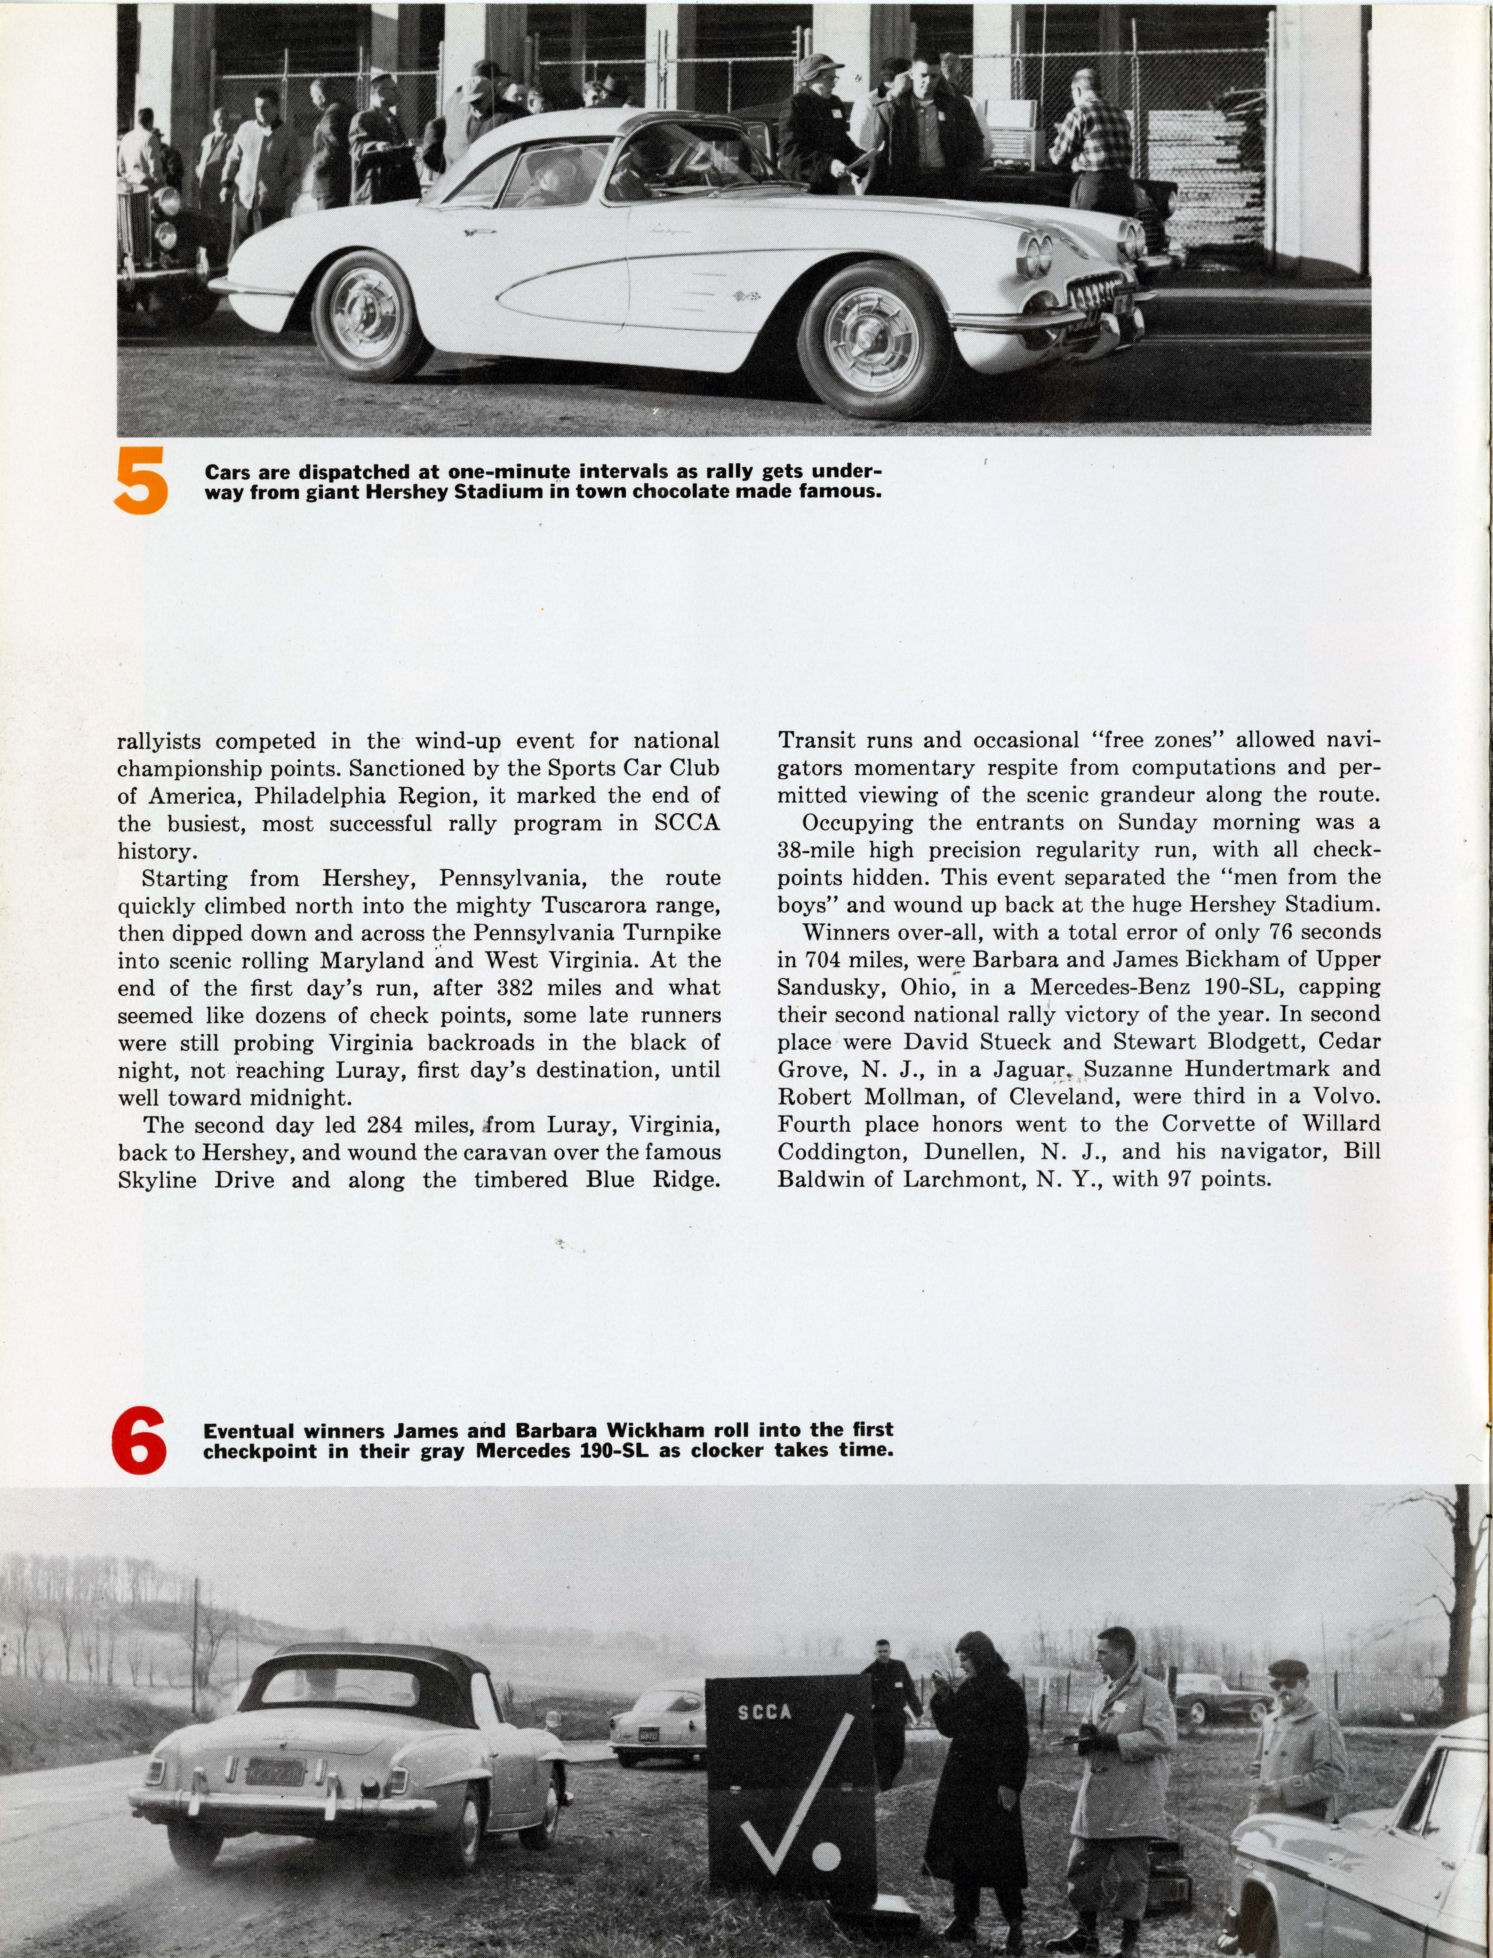 1959_Corvette_News_V2-4-06